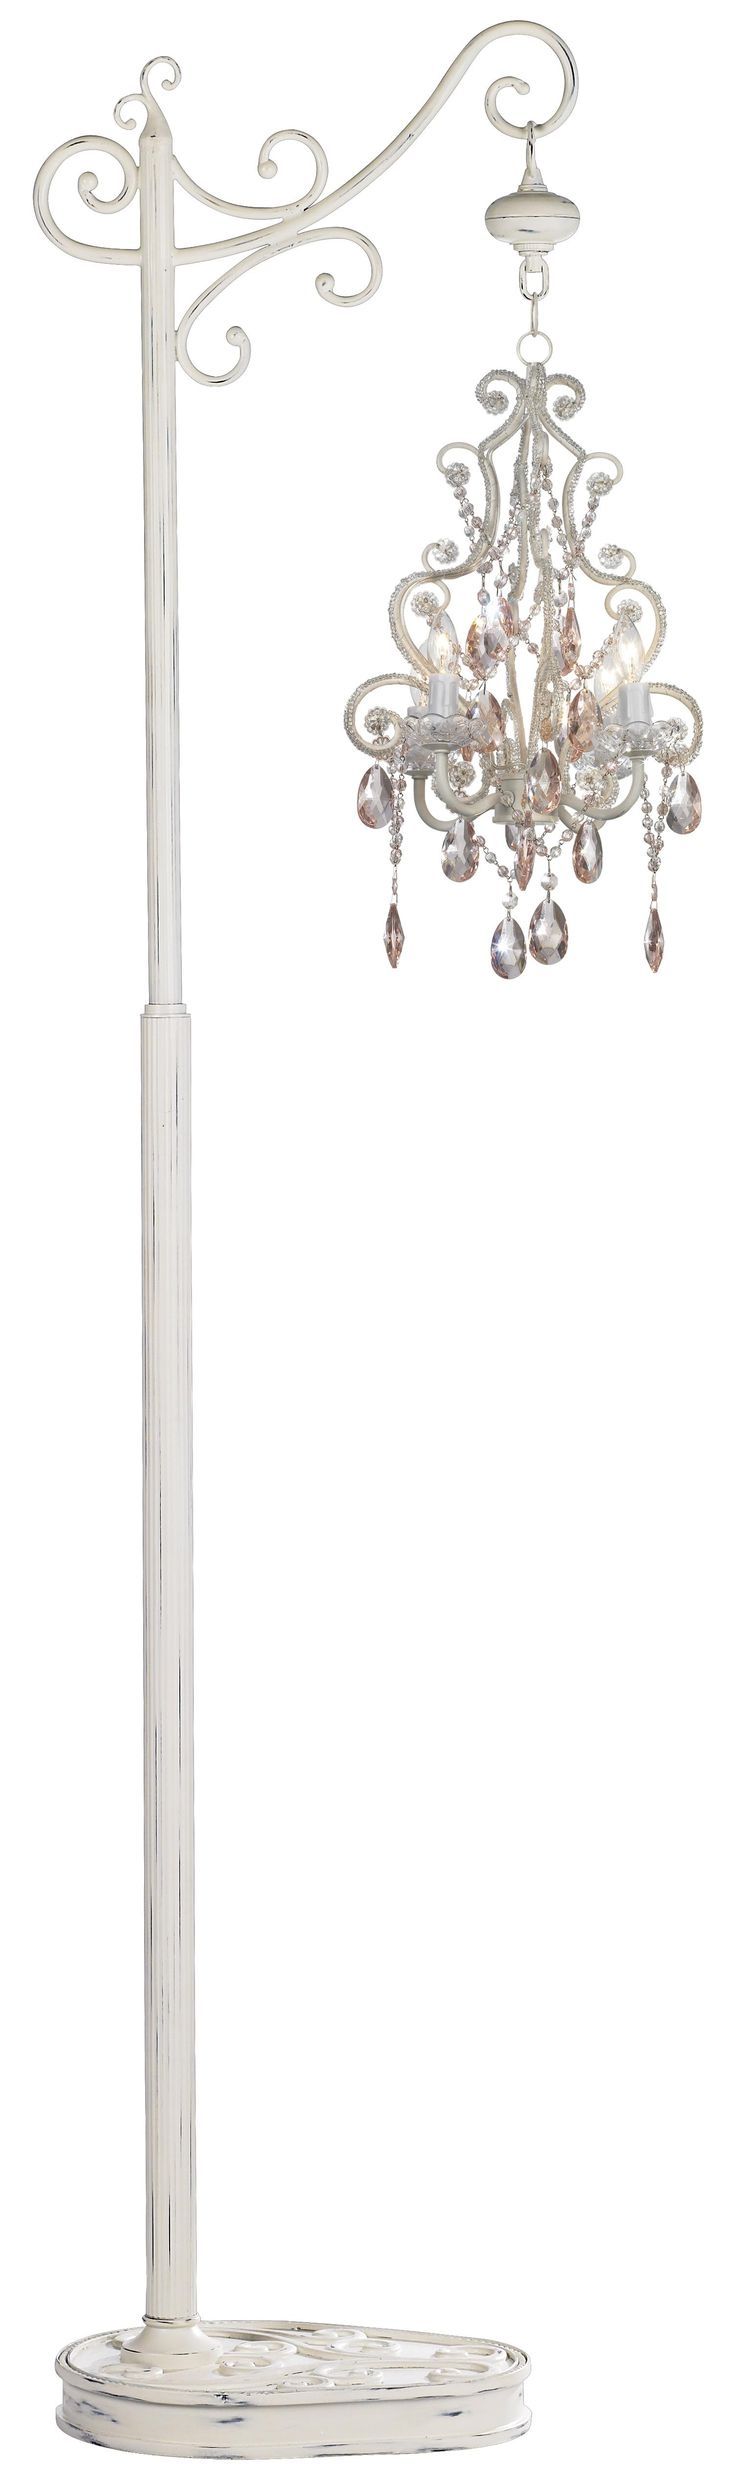 Top 25 Best Chandelier Floor Lamp Ideas On Pinterest Floor With Chandelier Standing Lamps (View 1 of 25)